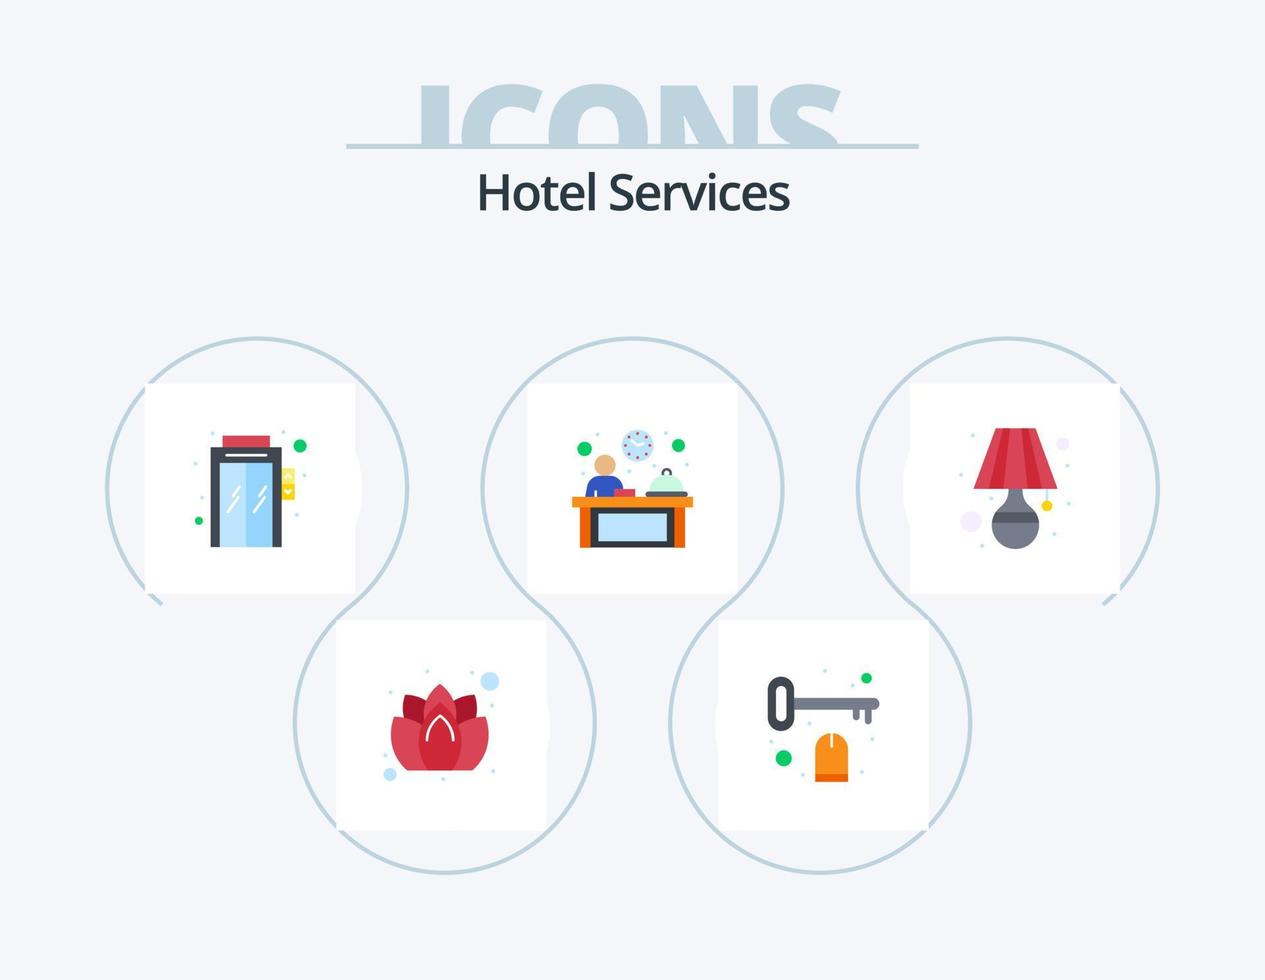 servicios de hotel paquete de iconos planos 5 diseño de iconos. habitación. lámpara. ascensor. recepción. hotel vector